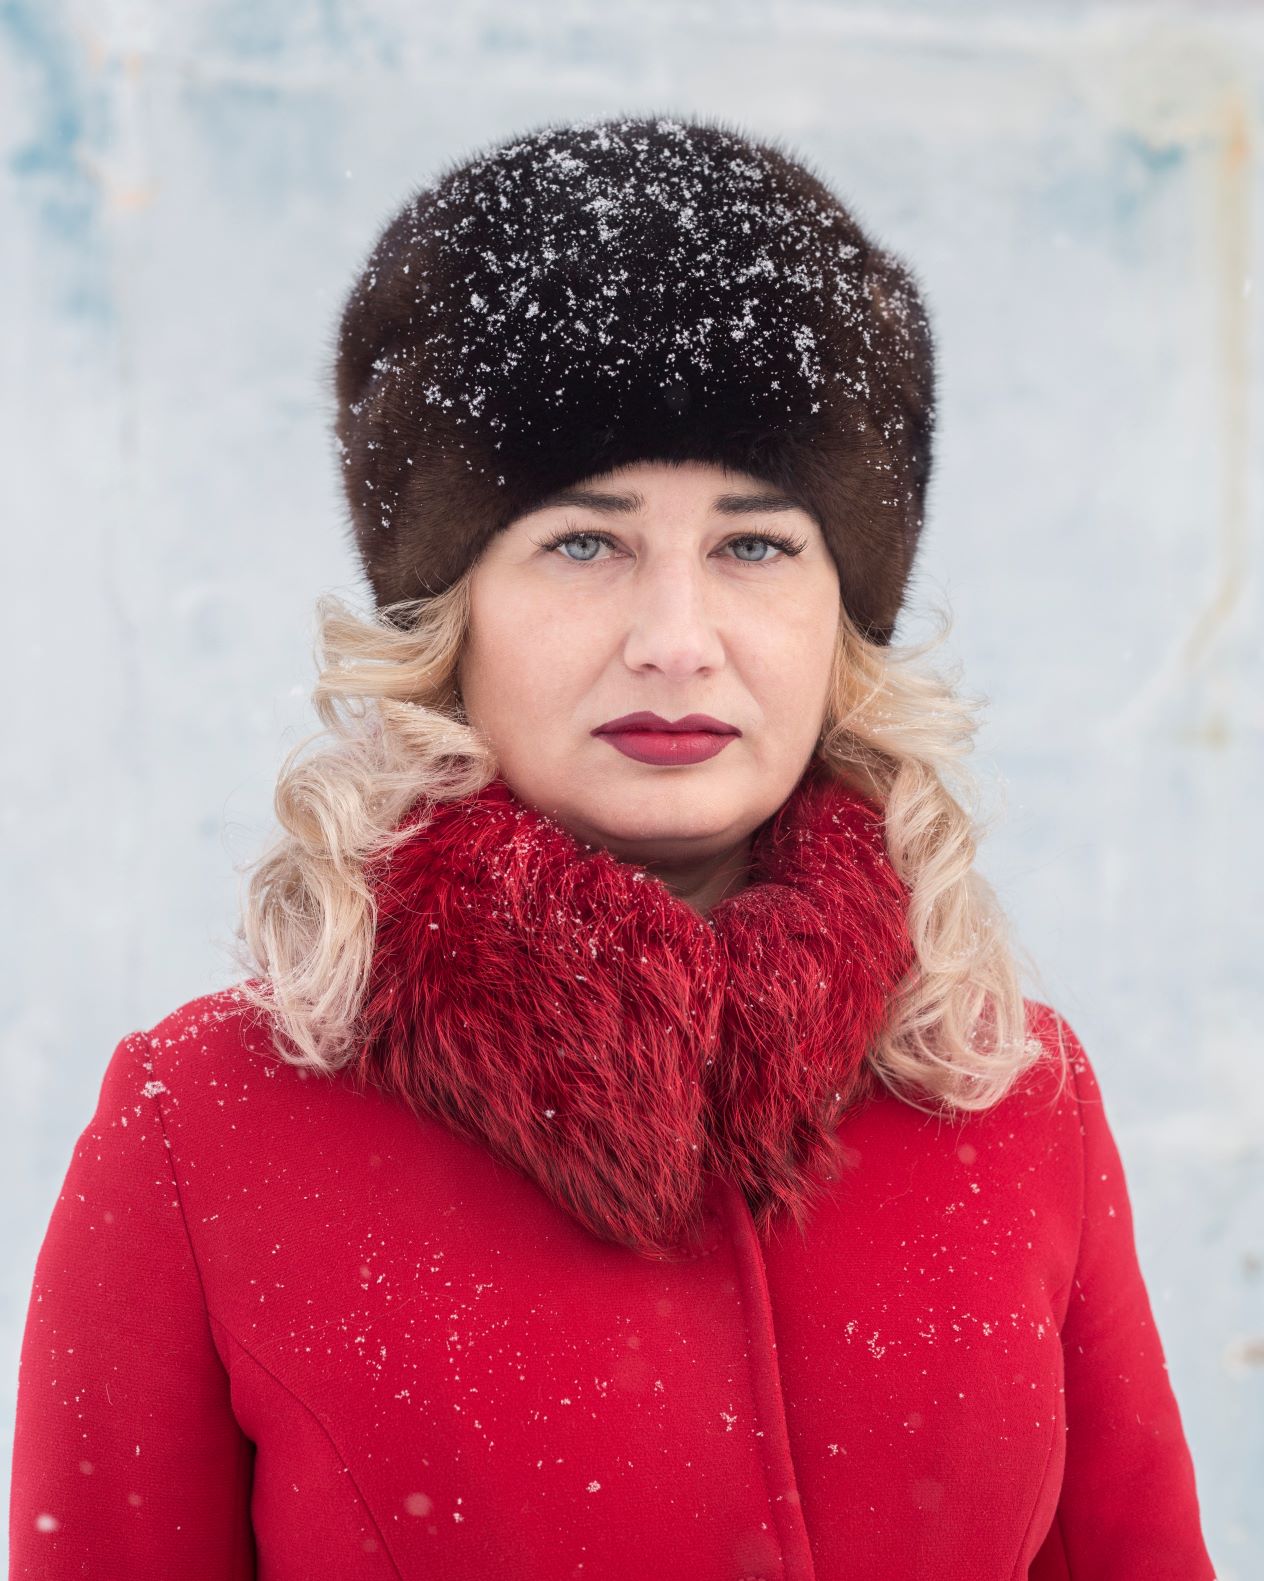 Mature videos russian women 10 women